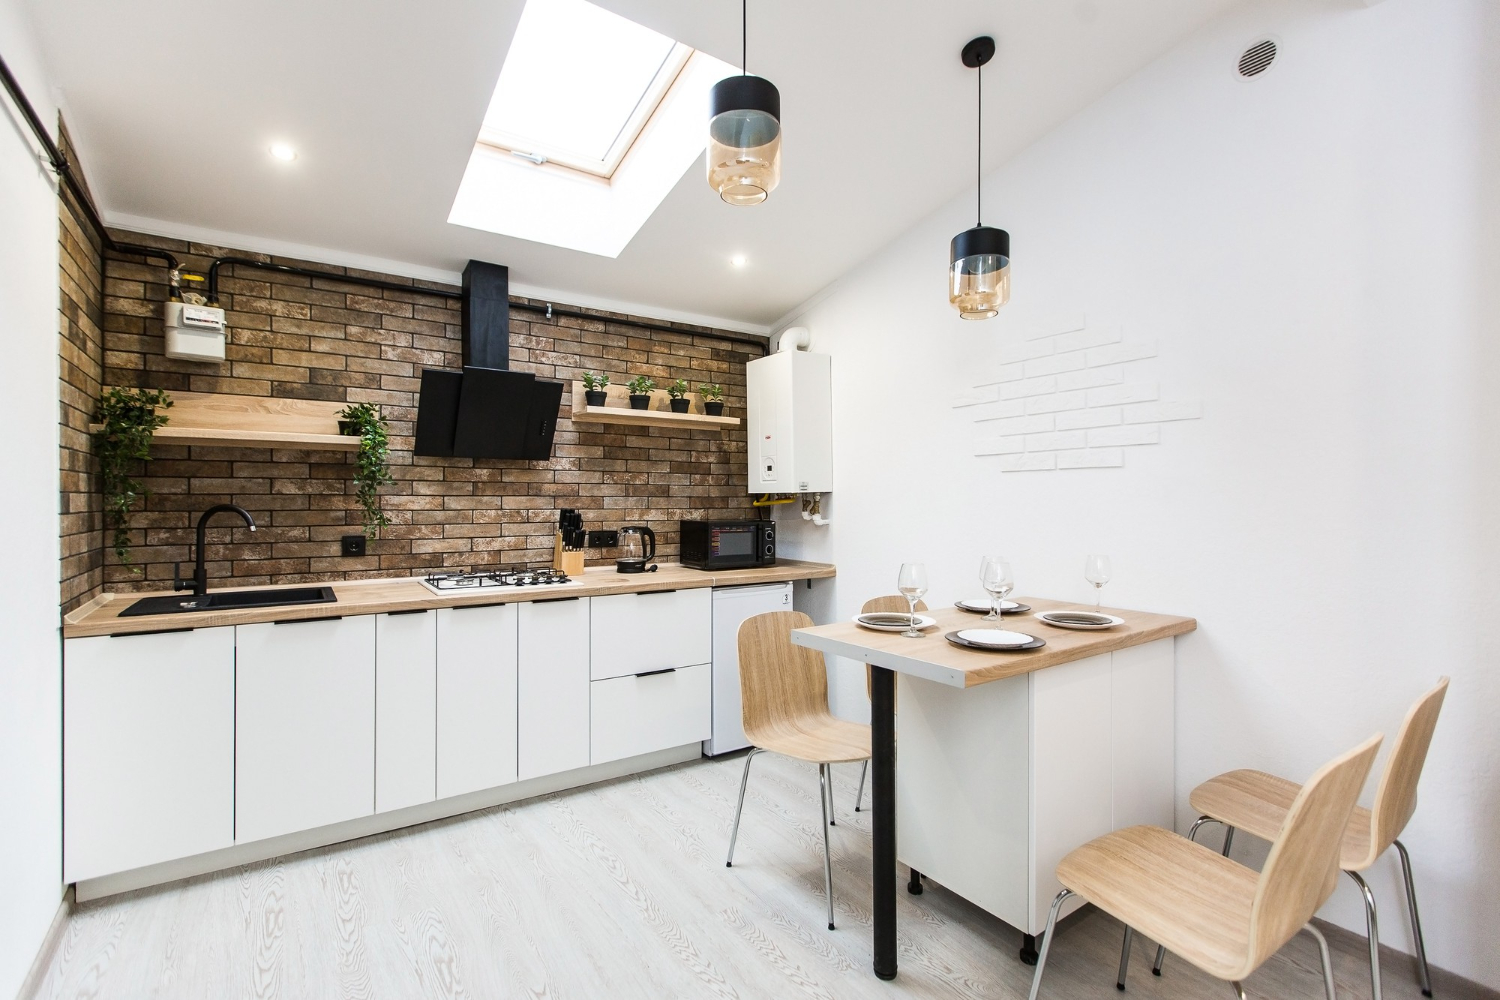 3 modern kitchen design ideas